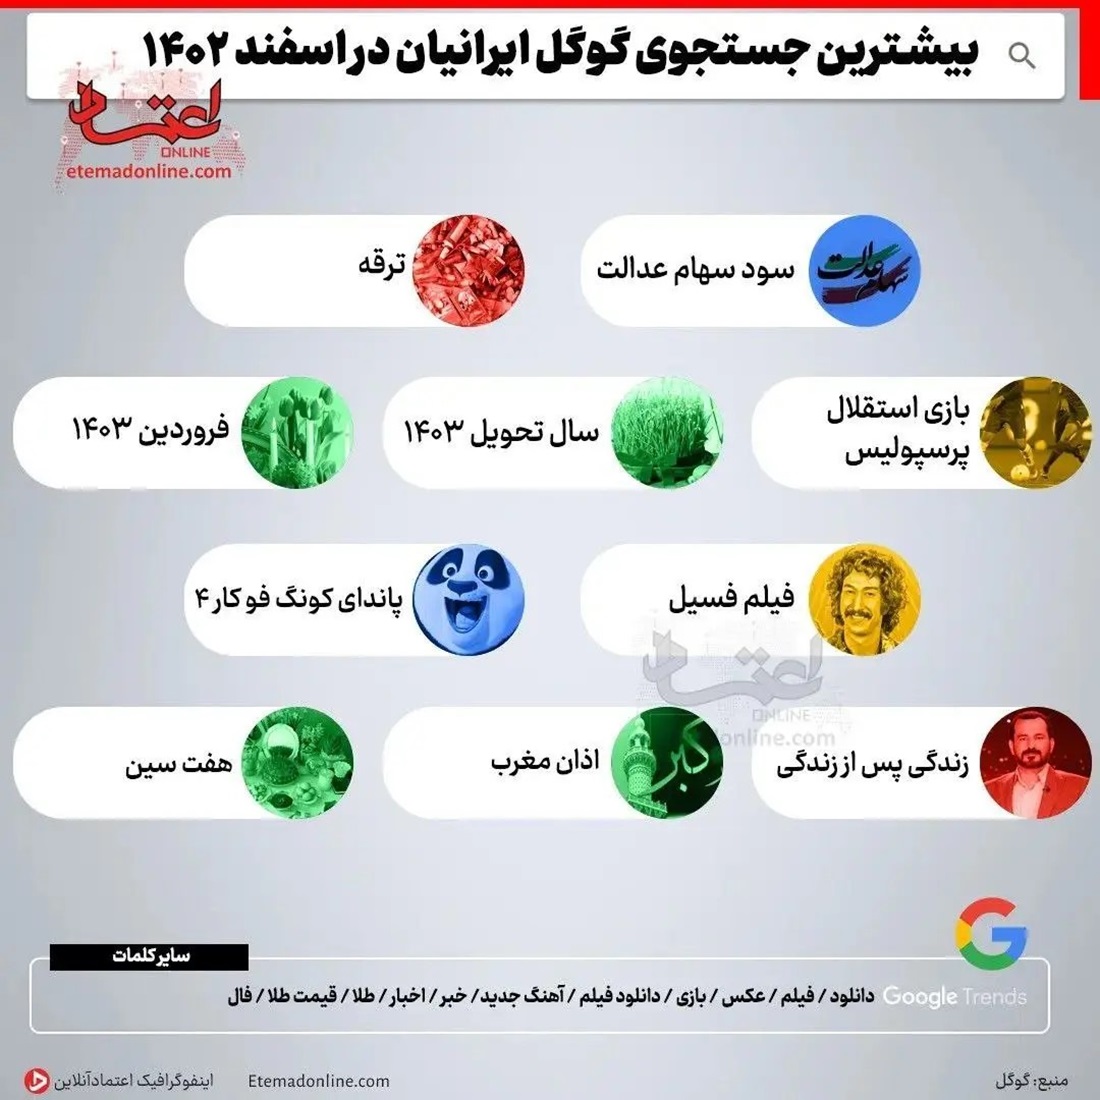 بیشترین سرچ کاربران ایرانی گوگل در اسفند 1402